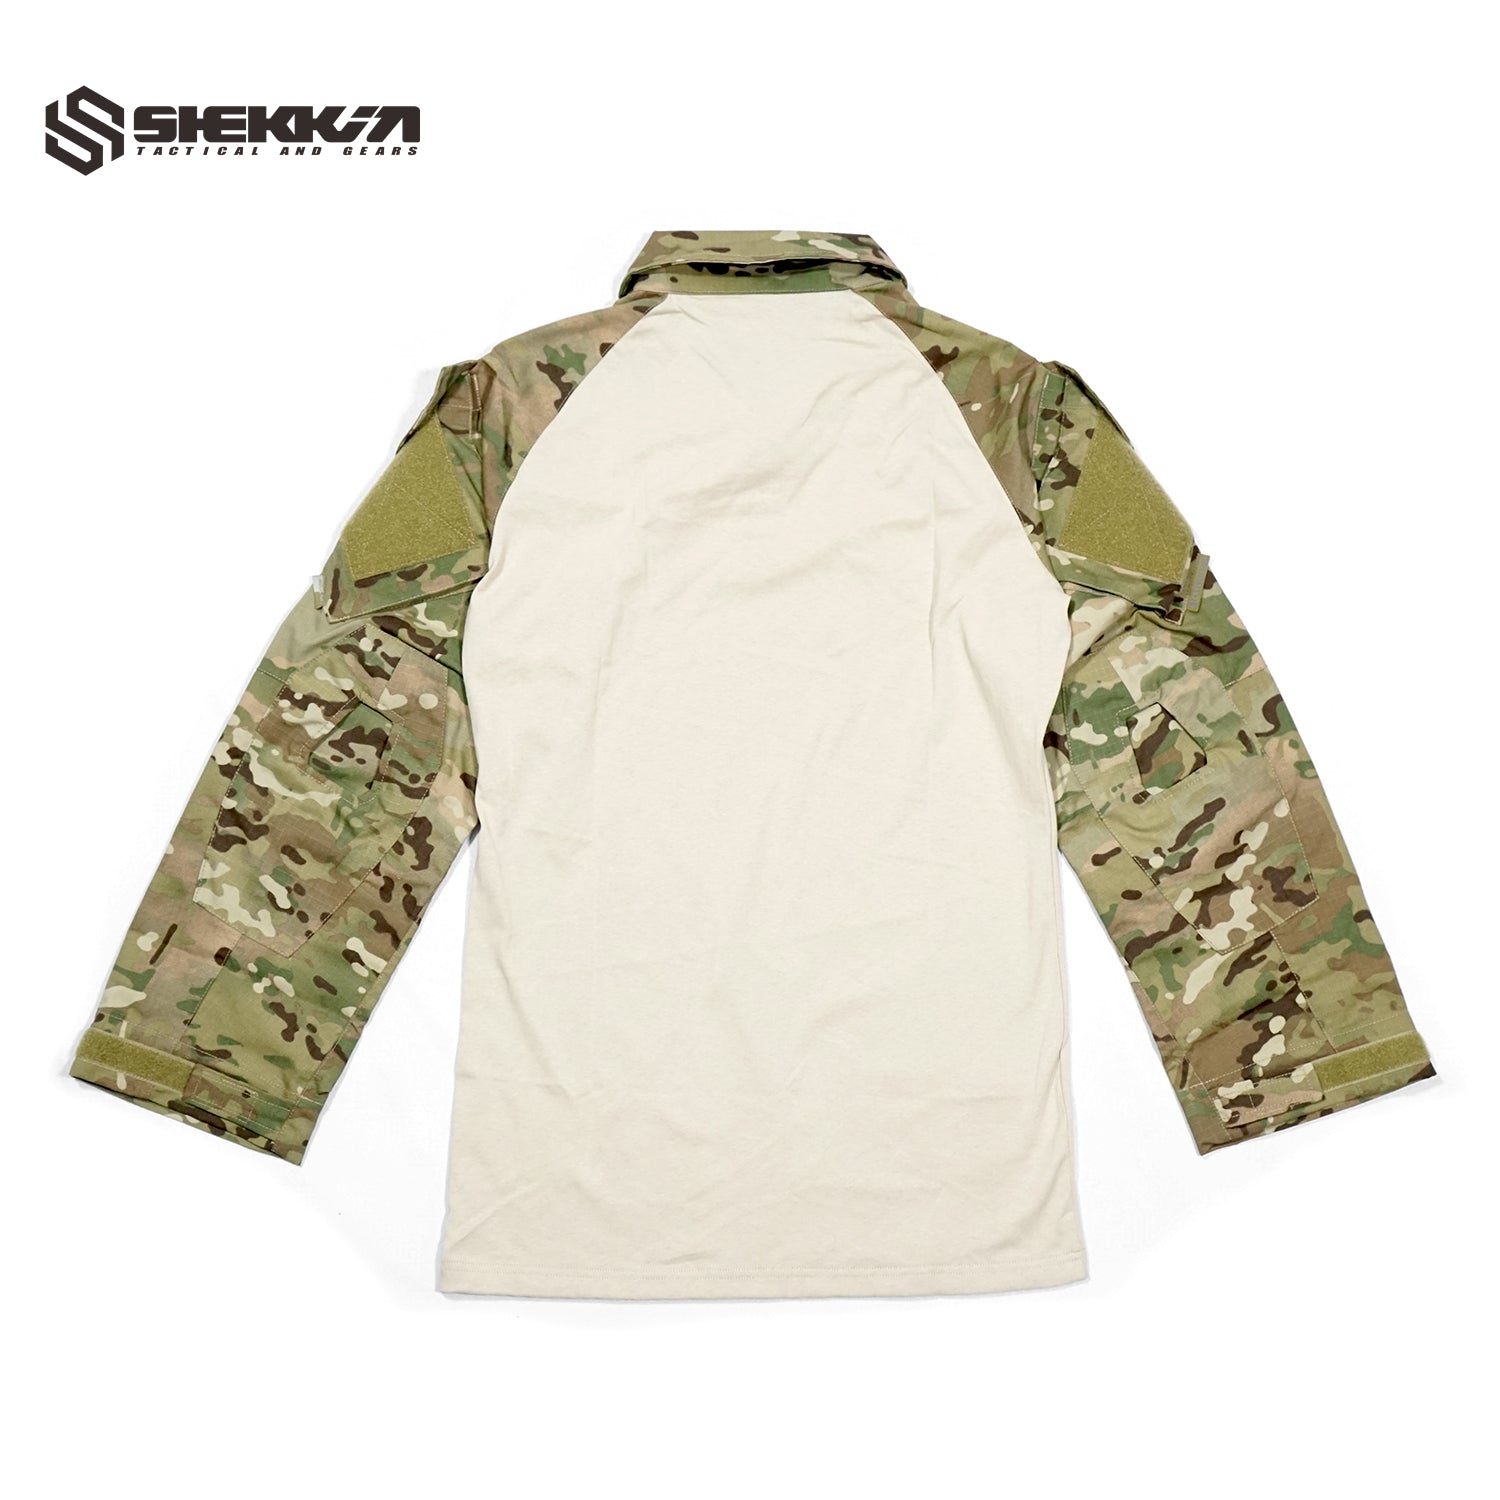 Multicam army cut gen2 combat shirt - Shekkin Gears